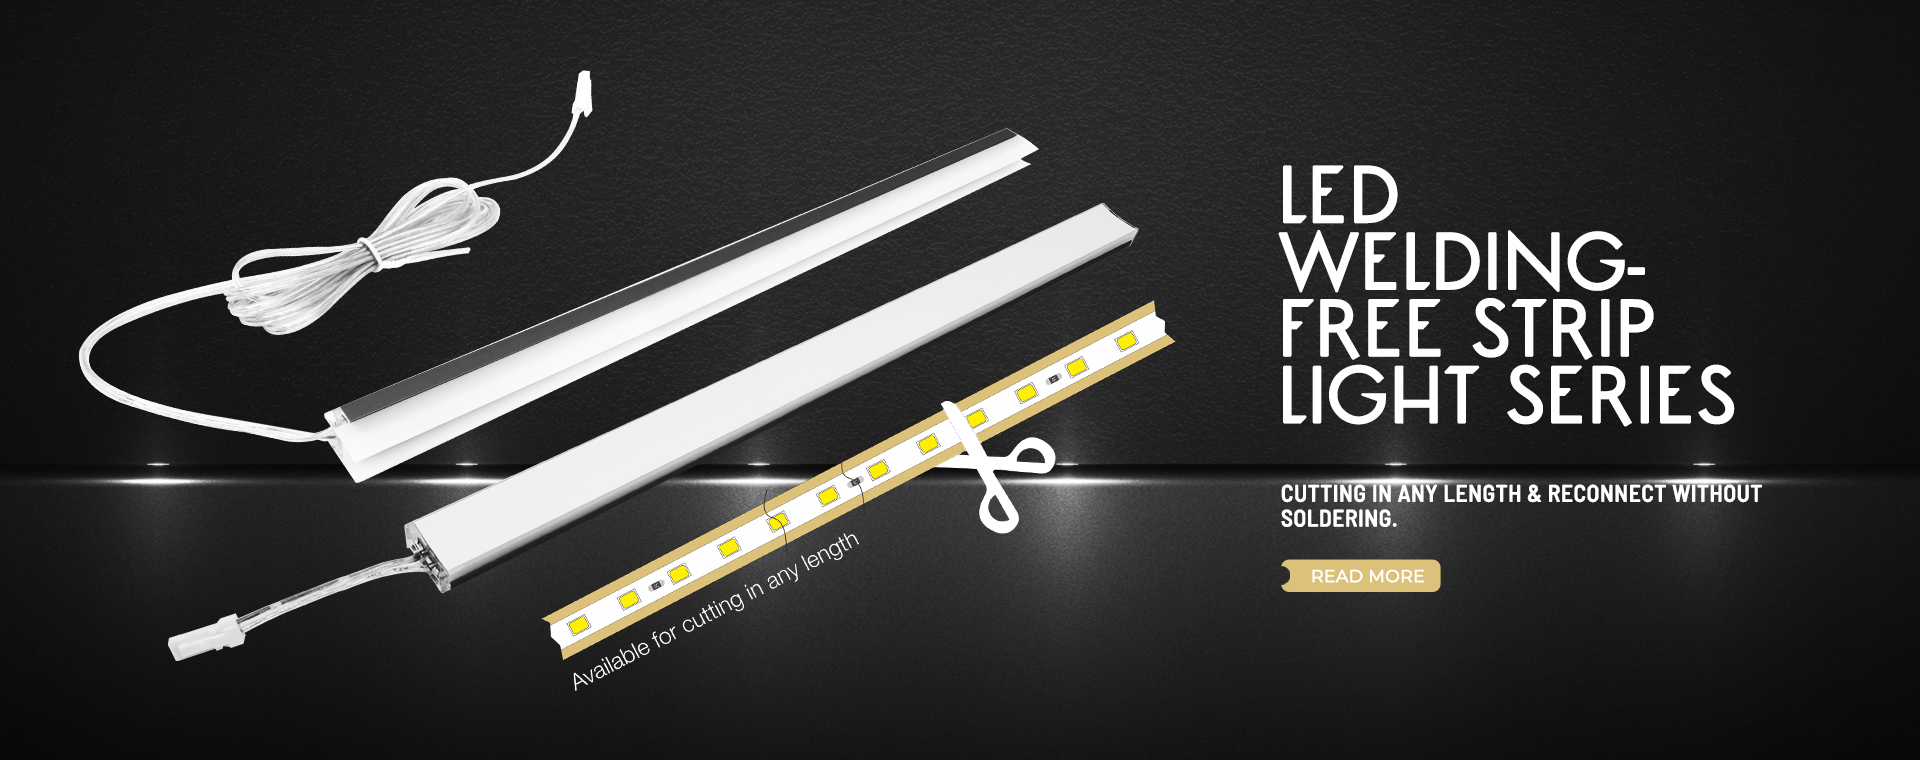 LED Welding-Free Strip Light